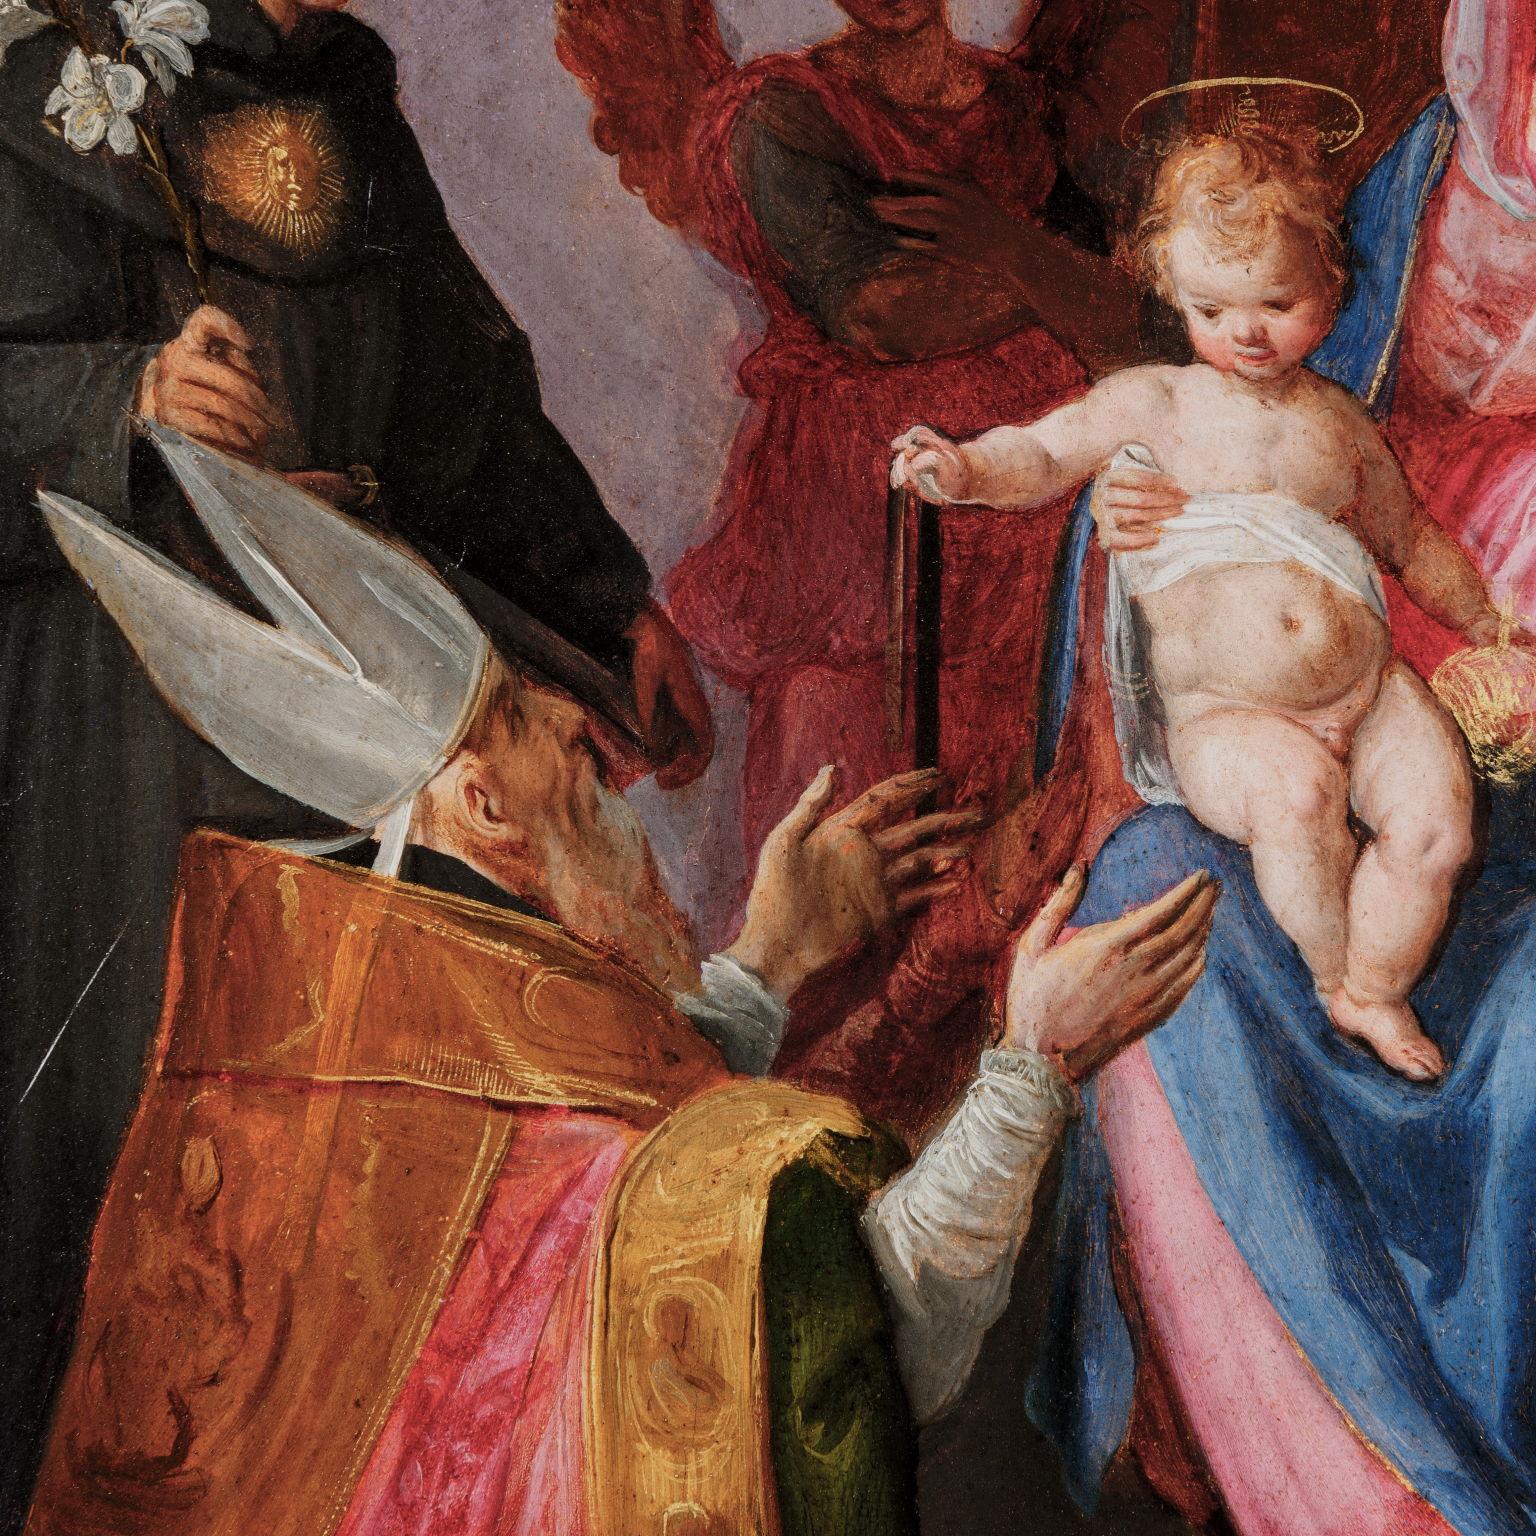 Le tableau représente la Vierge à l'Enfant trônant, deux anges en prière et les saints Nicolas de Tolentino, Augustin, Luc l'Évangéliste et Monique sous un élégant dais. L'œuvre doit être reconnue comme une esquisse préparatoire pour un grand